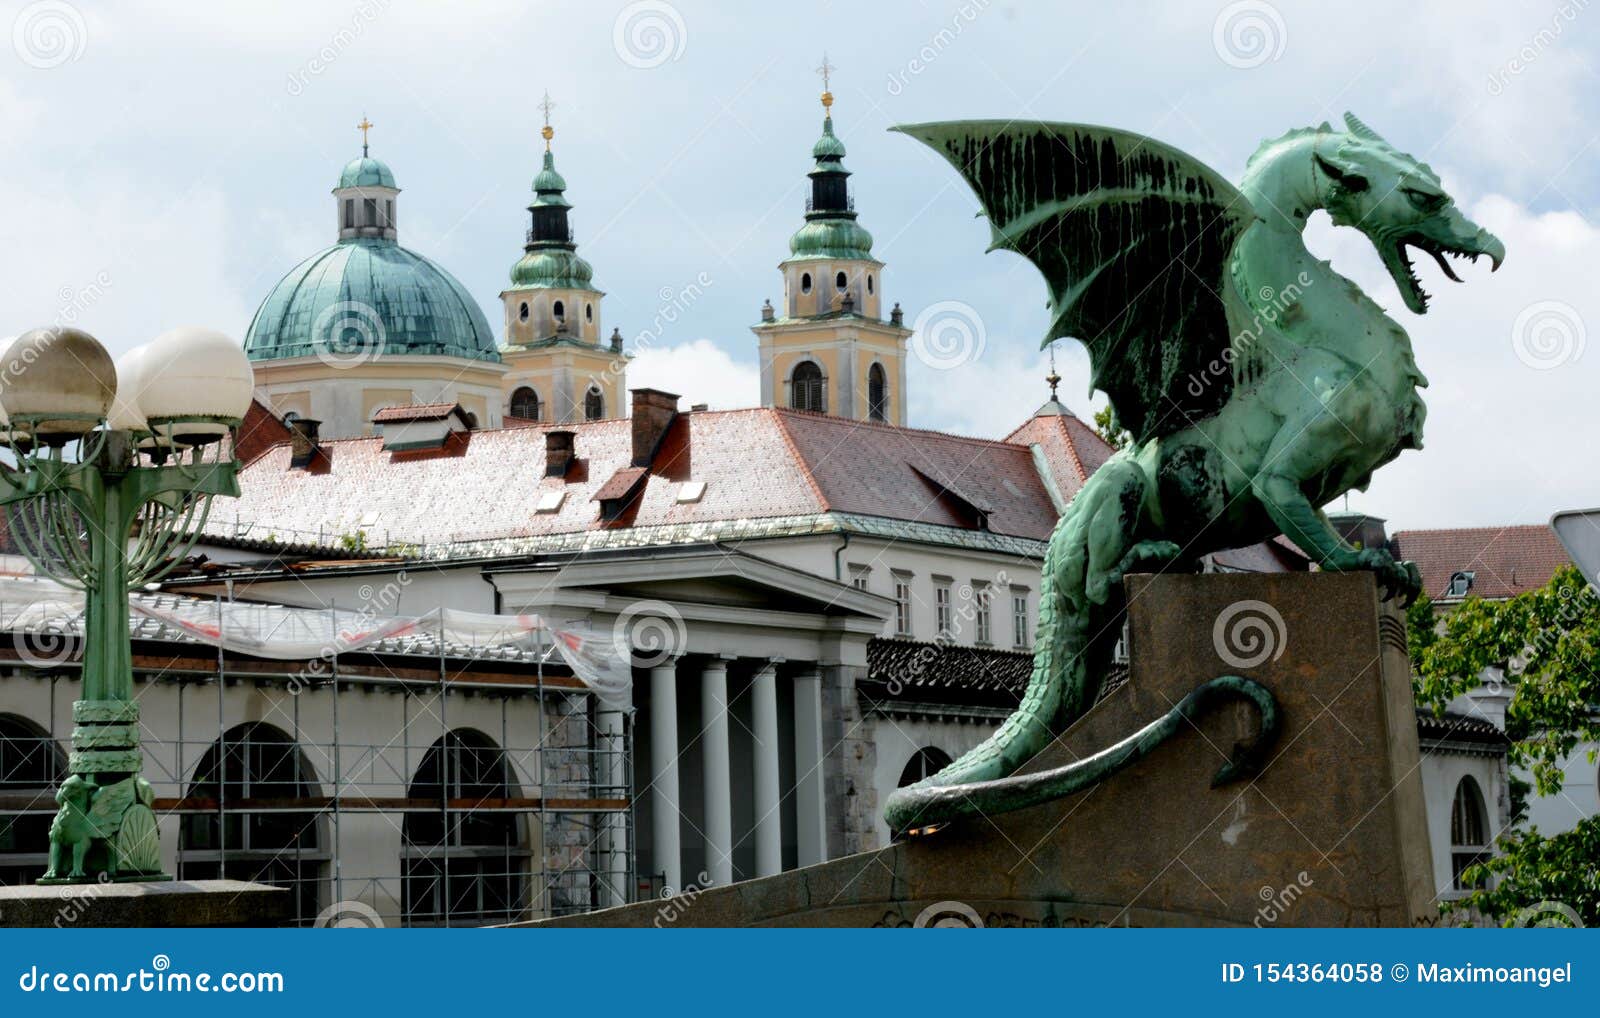 dragon& x27;s of ljubljana, slovenia